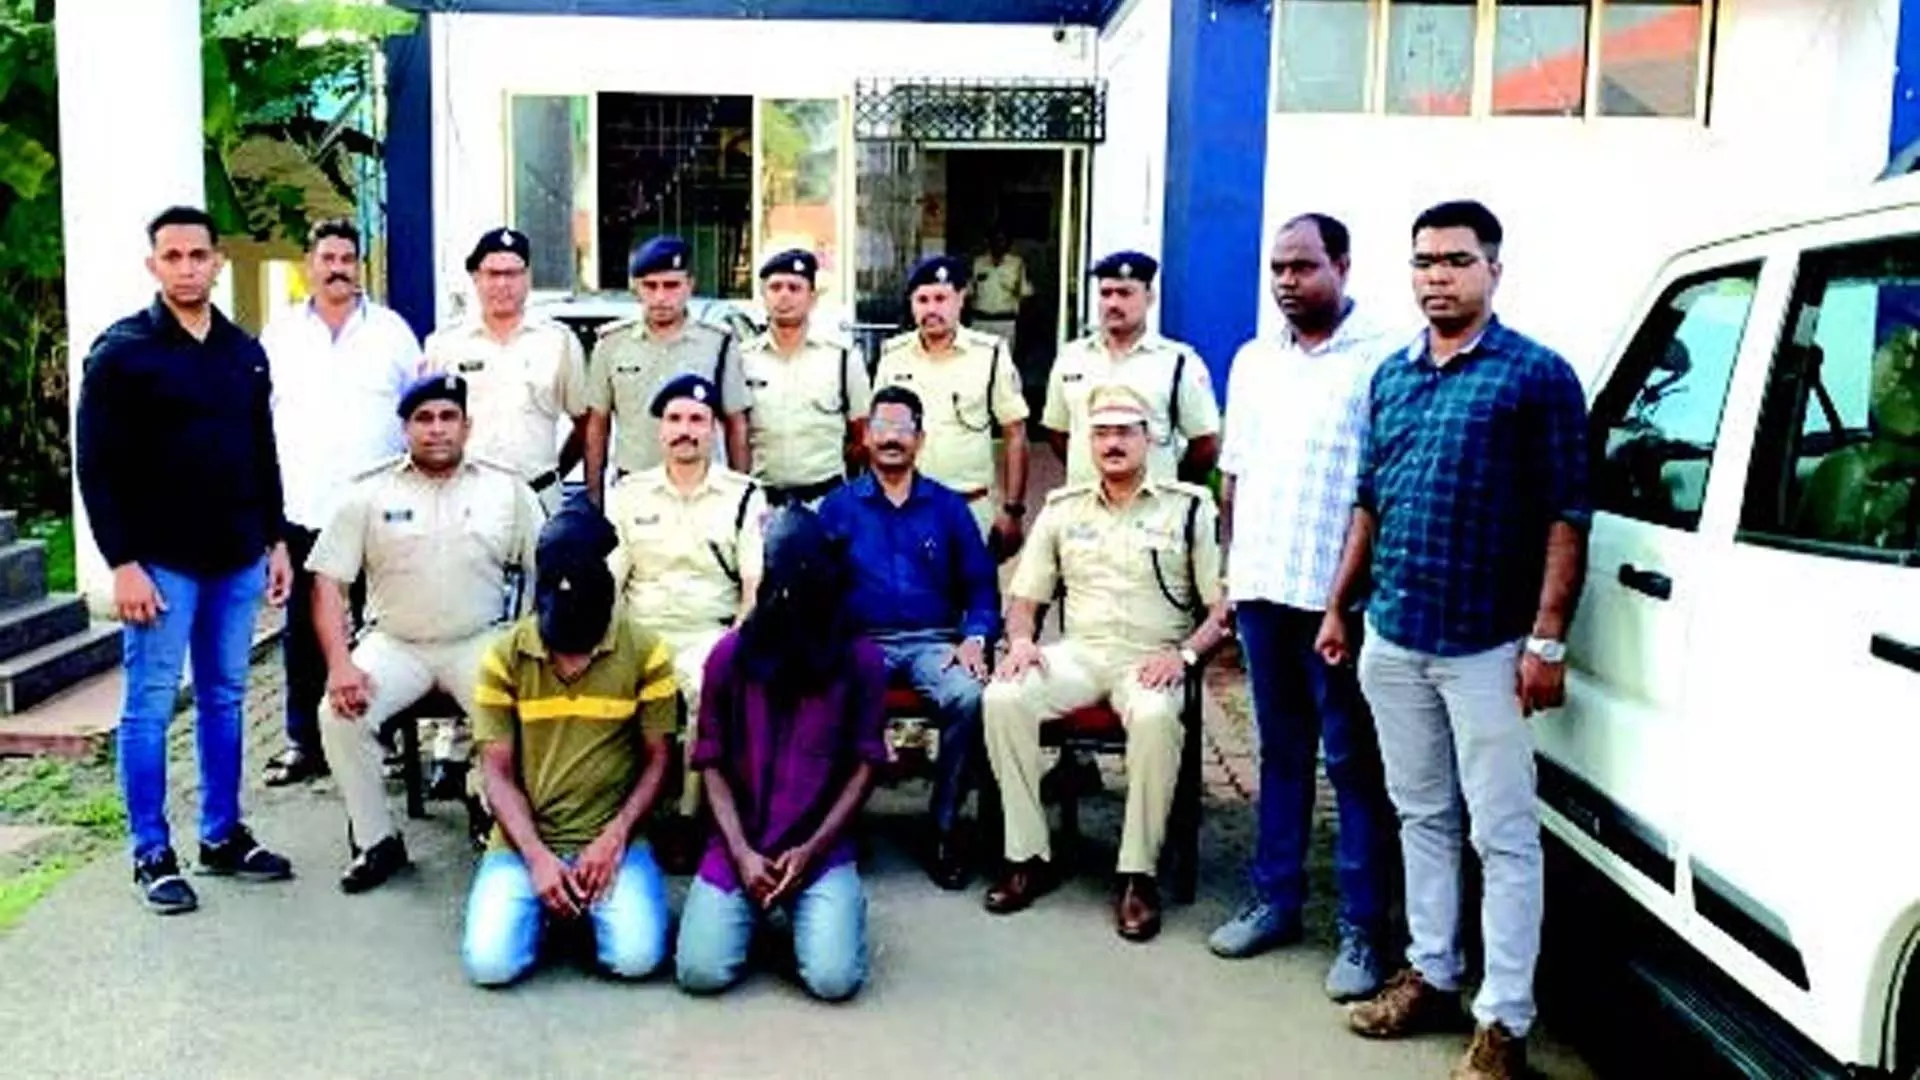 5.06 करोड़ रुपये की व्हेल उल्टी की तस्करी के आरोप में केरल के मूल निवासी गिरफ्तार